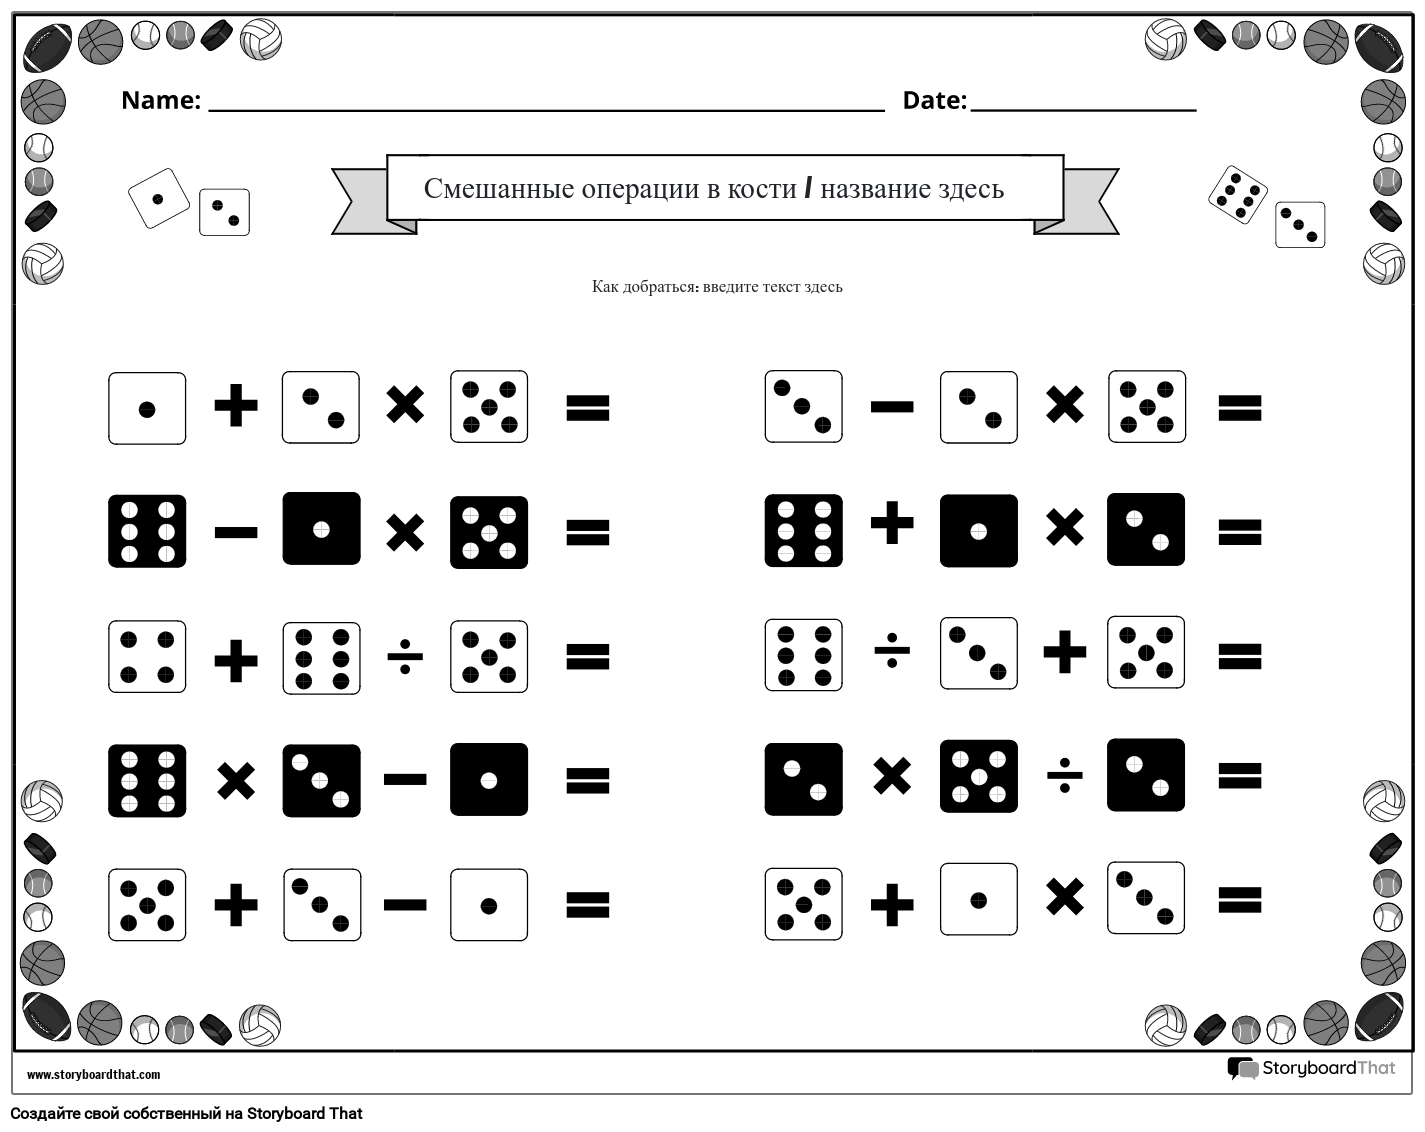 Рабочий лист смешанных операций с кубиками (черно-белый)